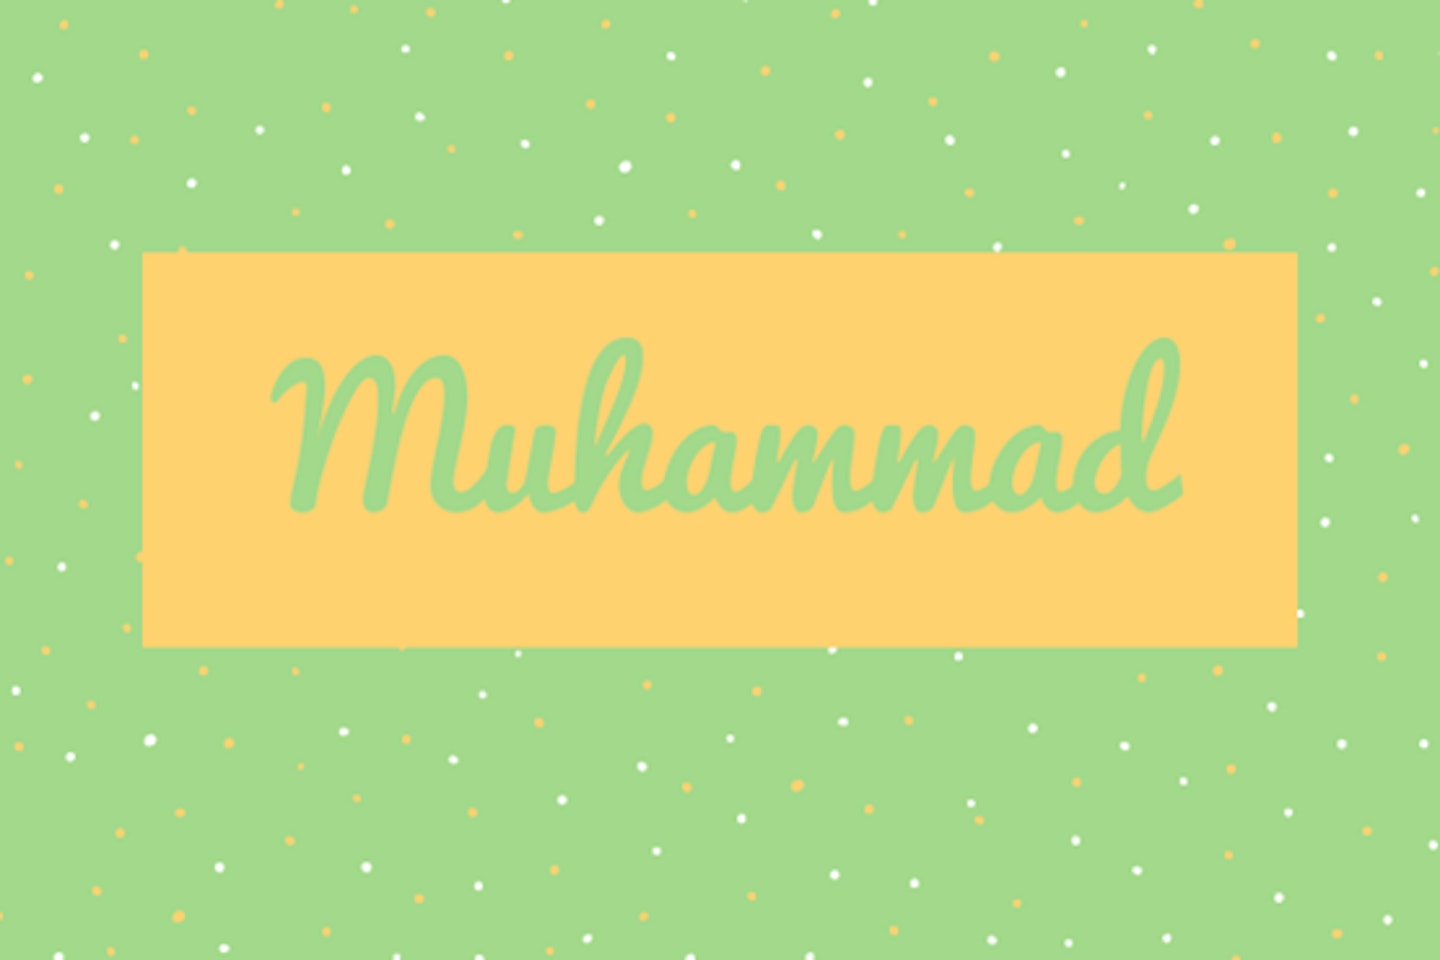 26) Muhammad